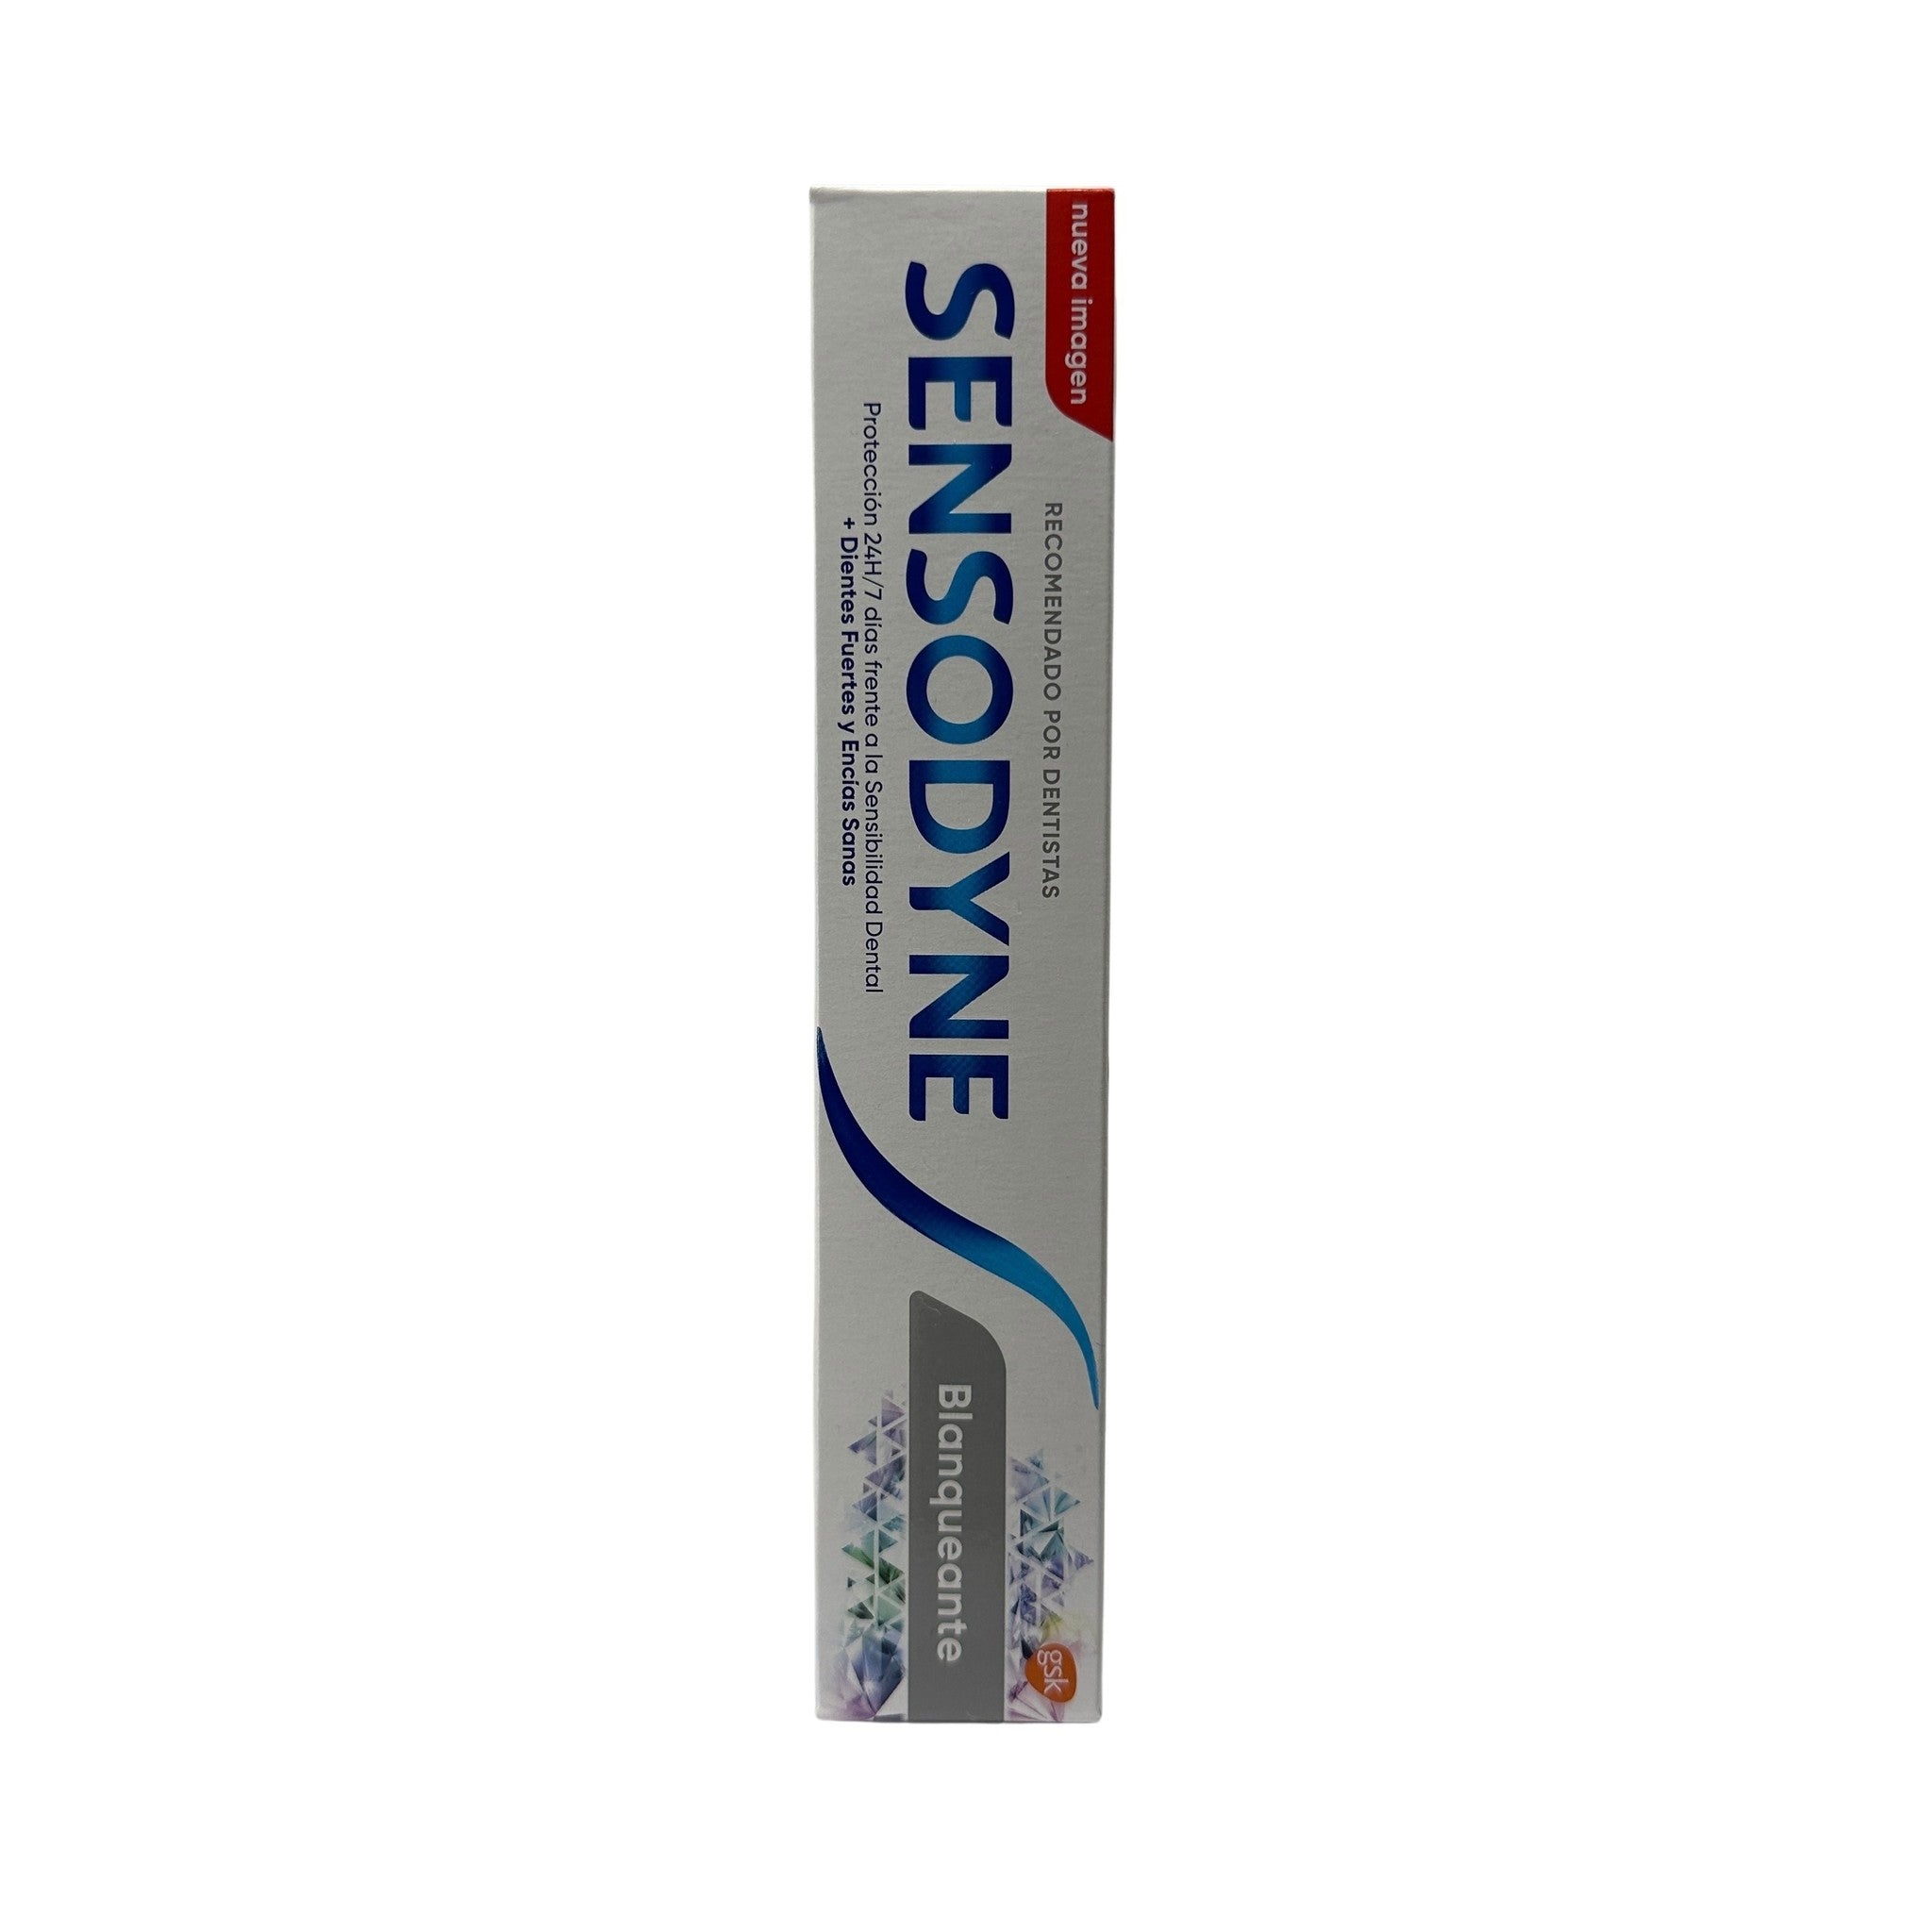 Sensodyne Whitening tandpasta 75ml EXP 0725